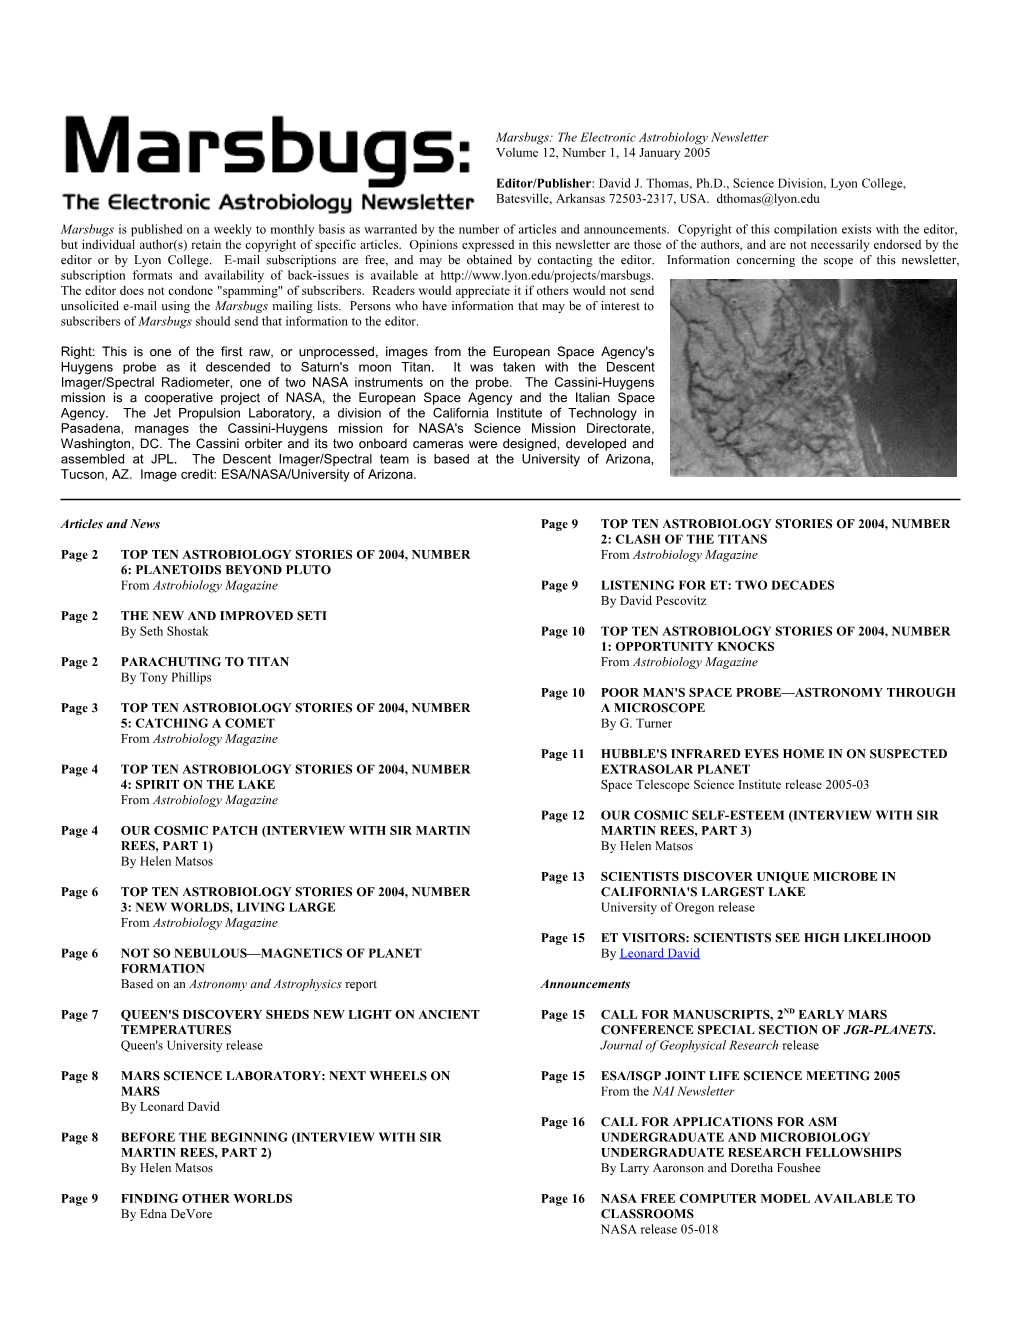 Marsbugs Vol. 12, No. 1